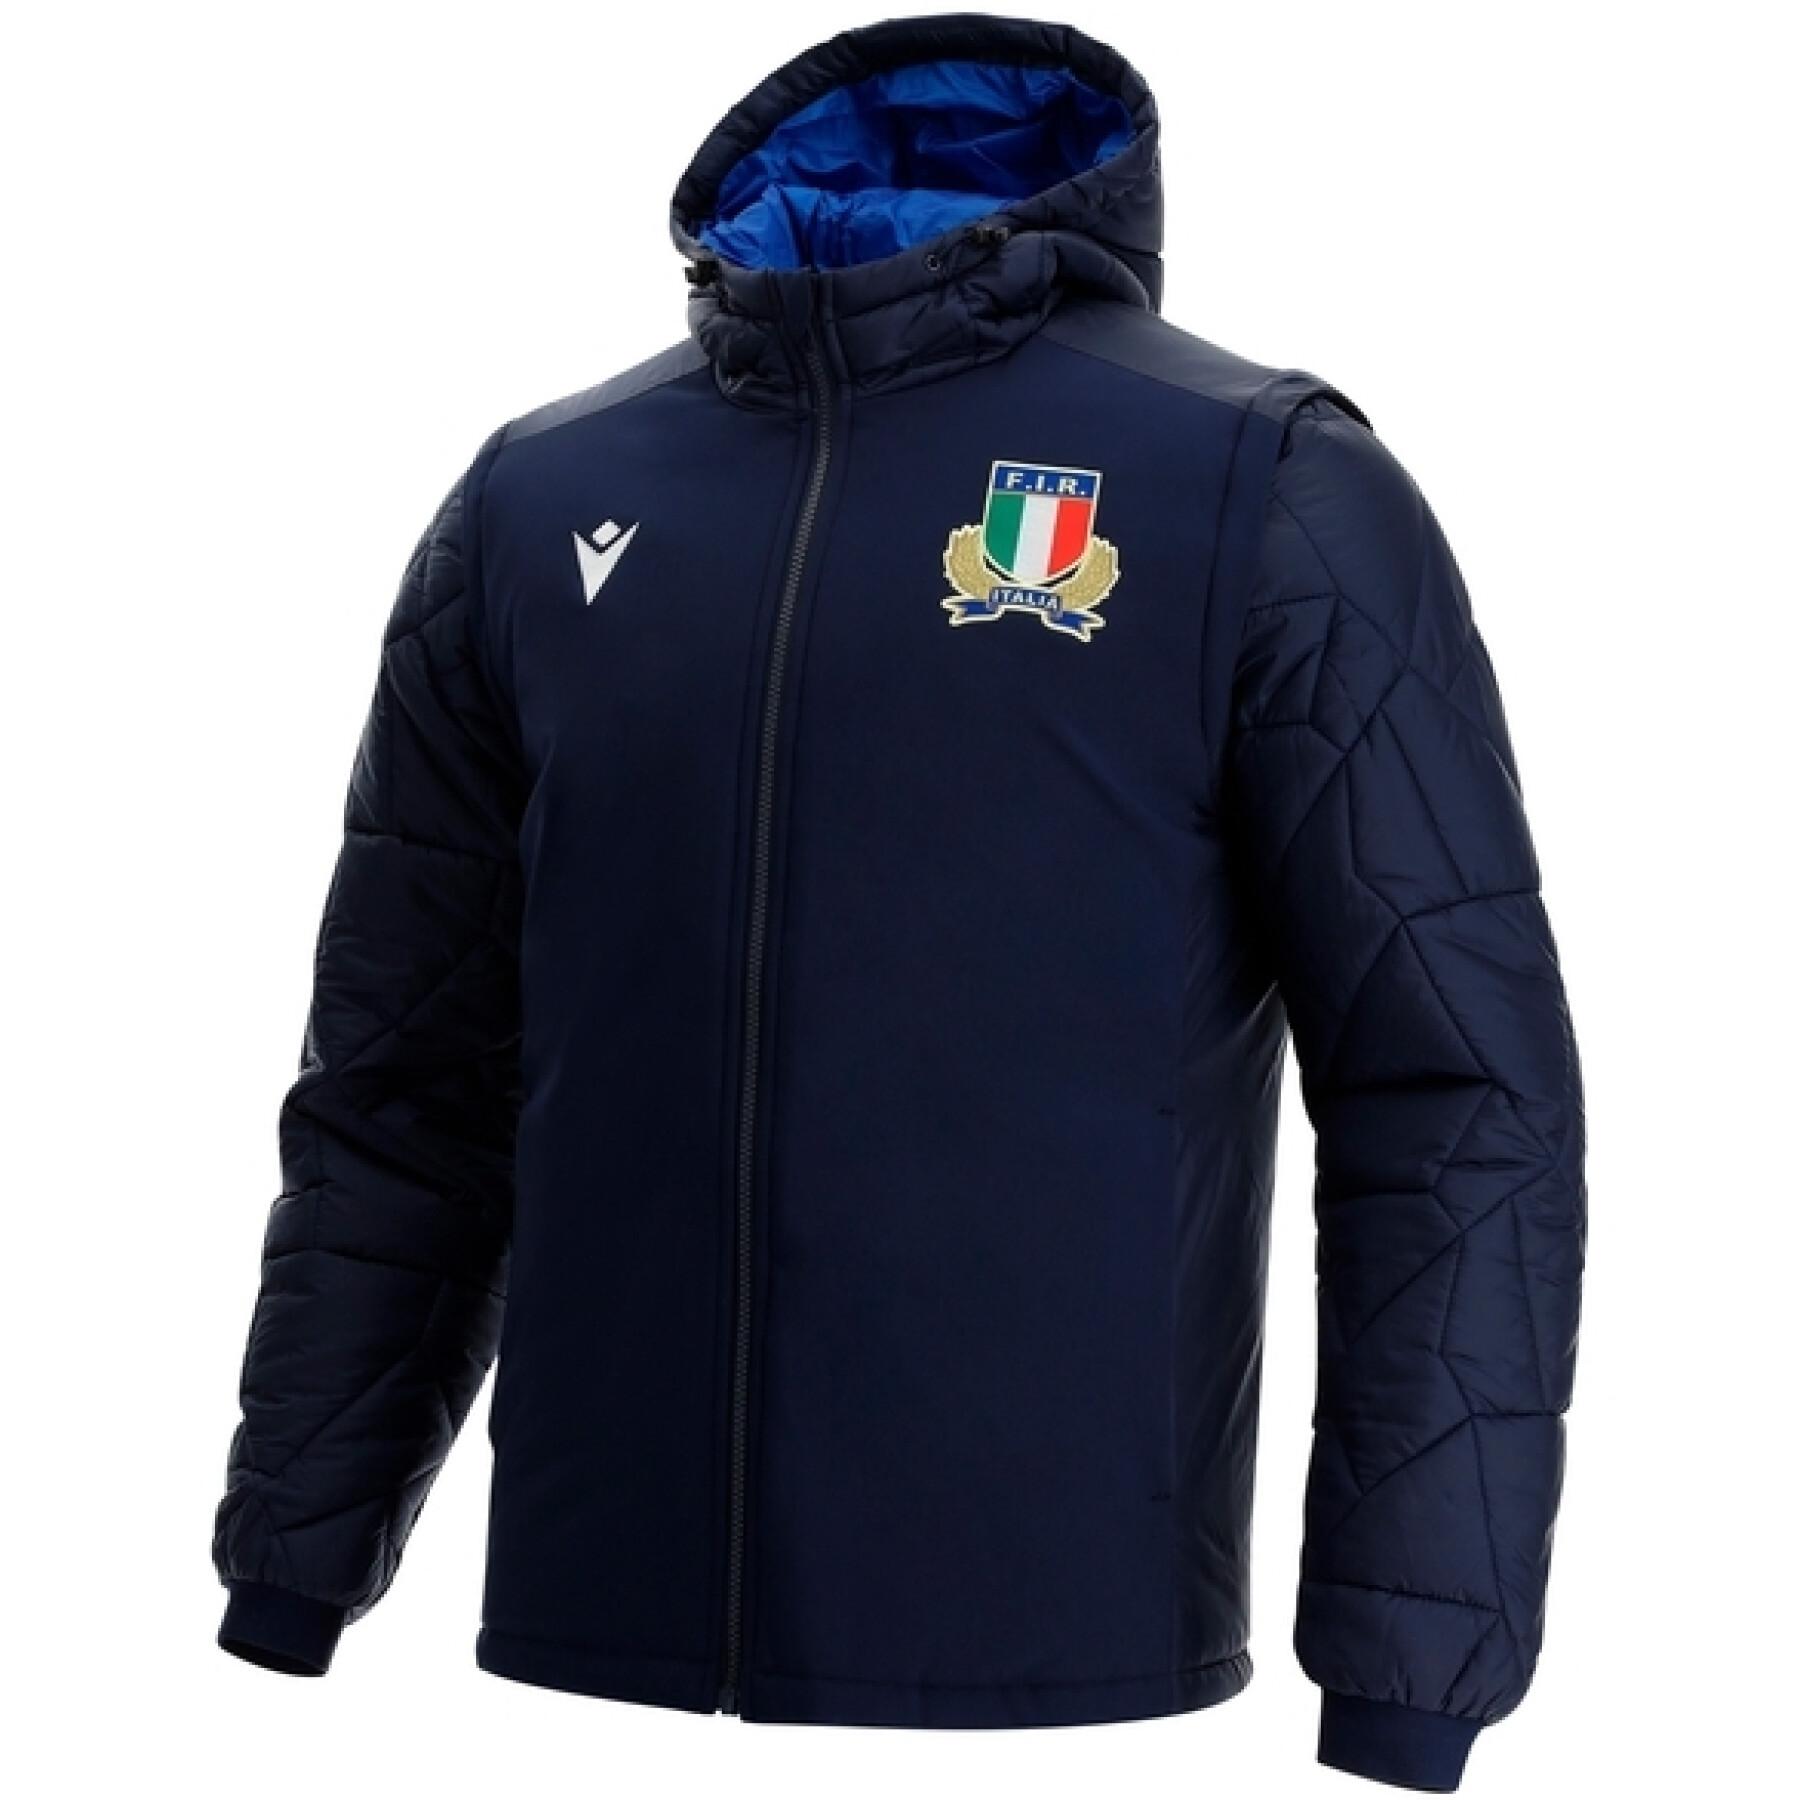 Down jacket Italie 2021/22